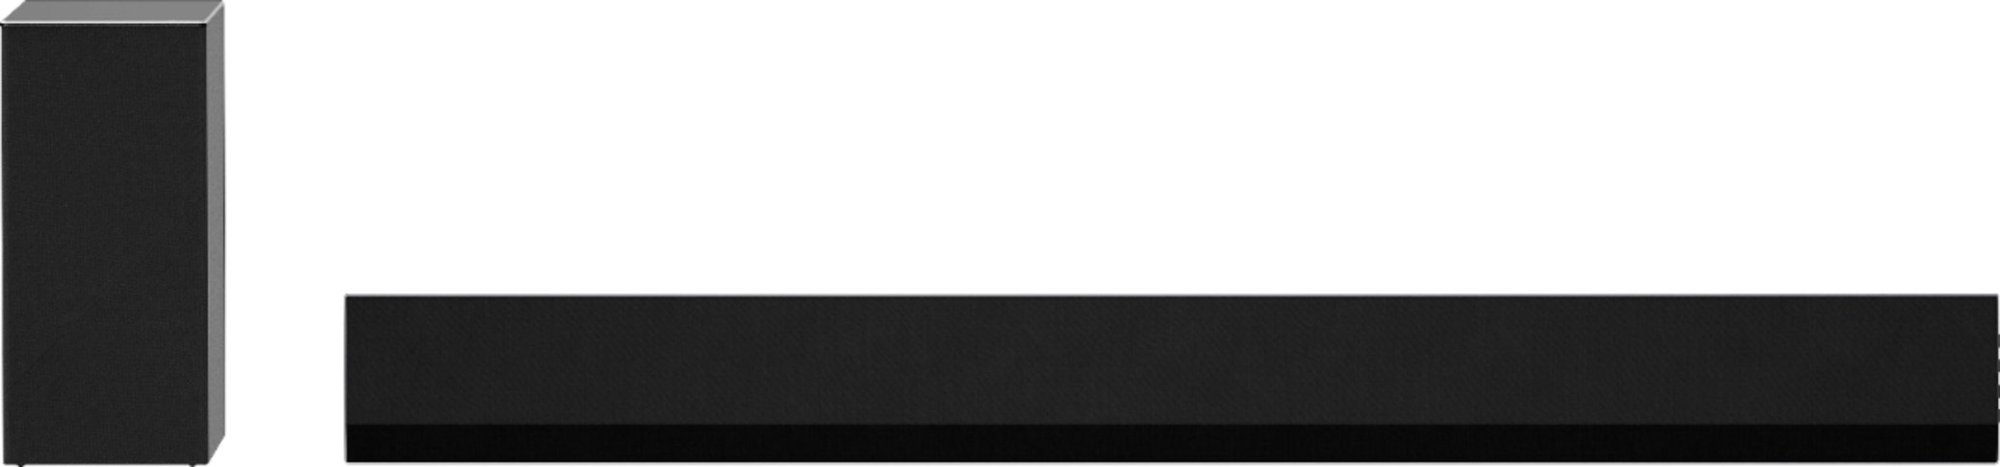 YMMV (Open-box) LG - 3.1-Channel 420W Soundbar + $500 Best Buy E-Gift Card $489.99